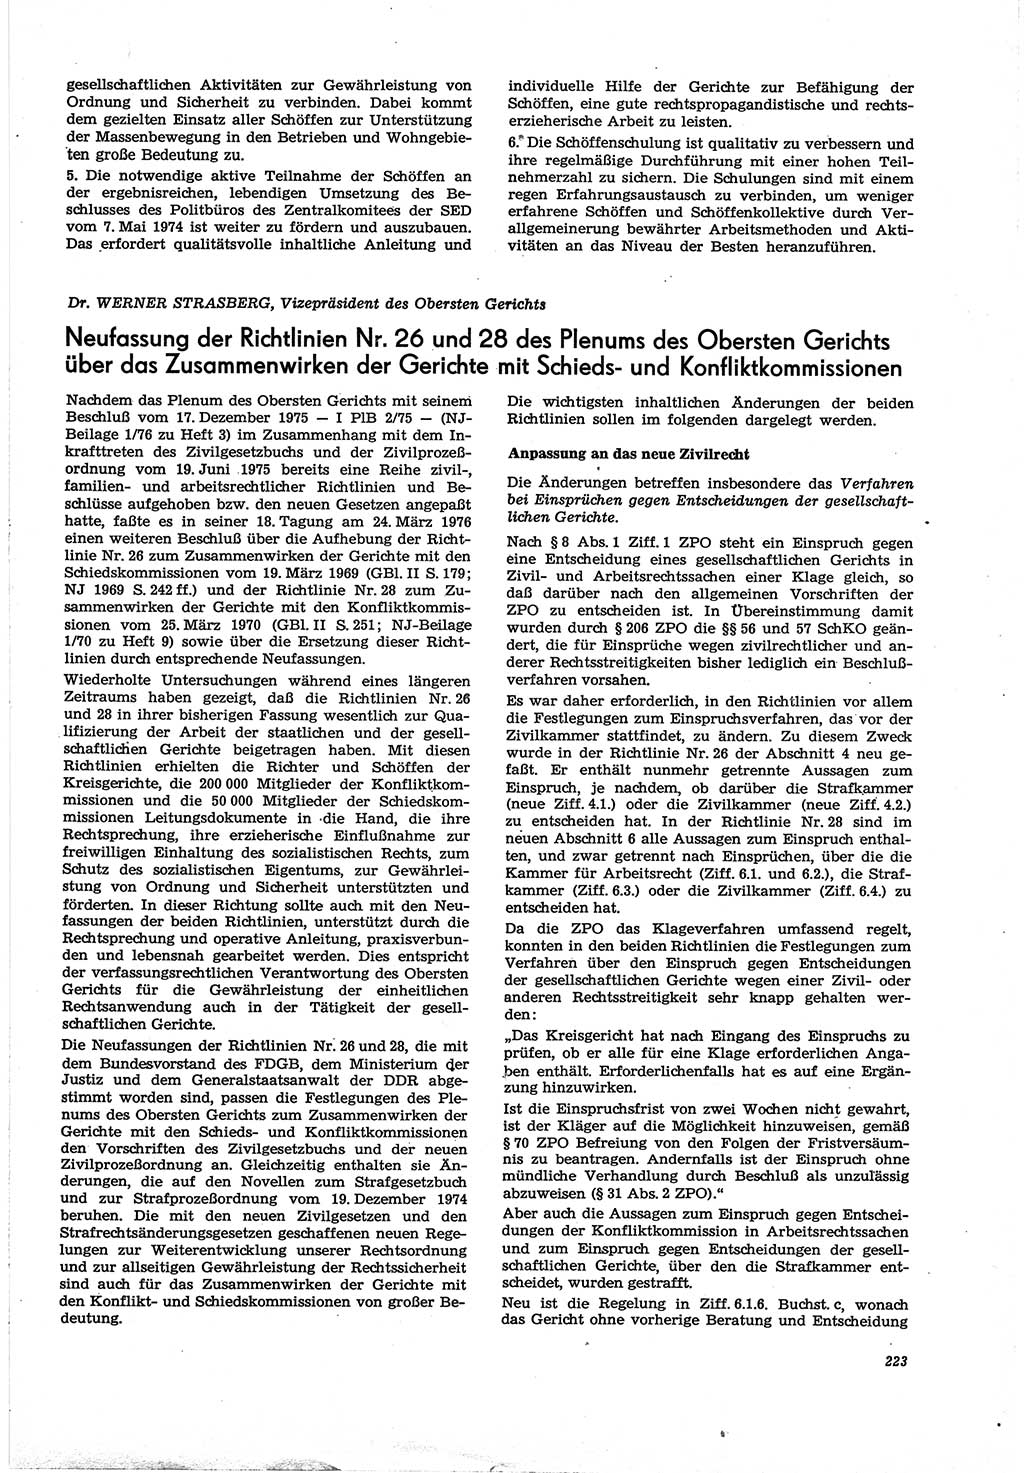 Neue Justiz (NJ), Zeitschrift für Recht und Rechtswissenschaft [Deutsche Demokratische Republik (DDR)], 30. Jahrgang 1976, Seite 223 (NJ DDR 1976, S. 223)